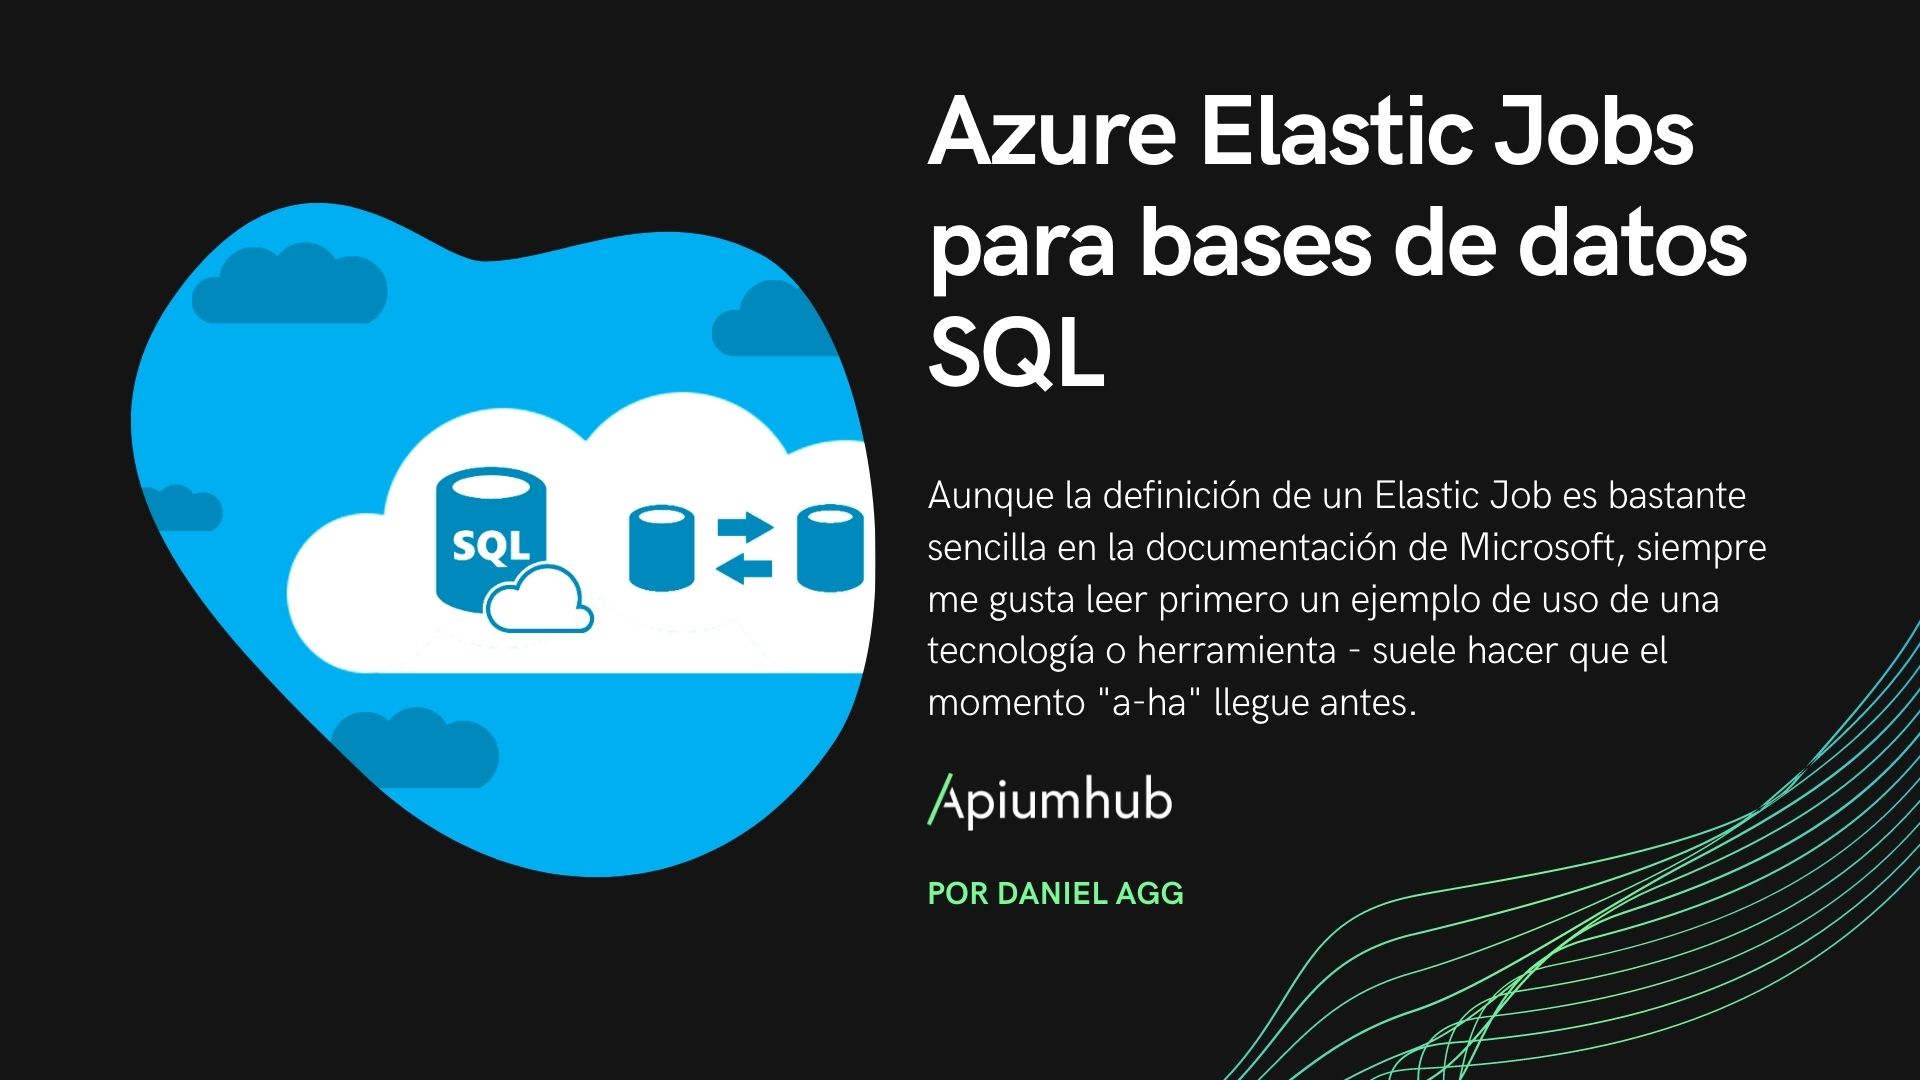 Azure Elastic Jobs para bases de datos SQL